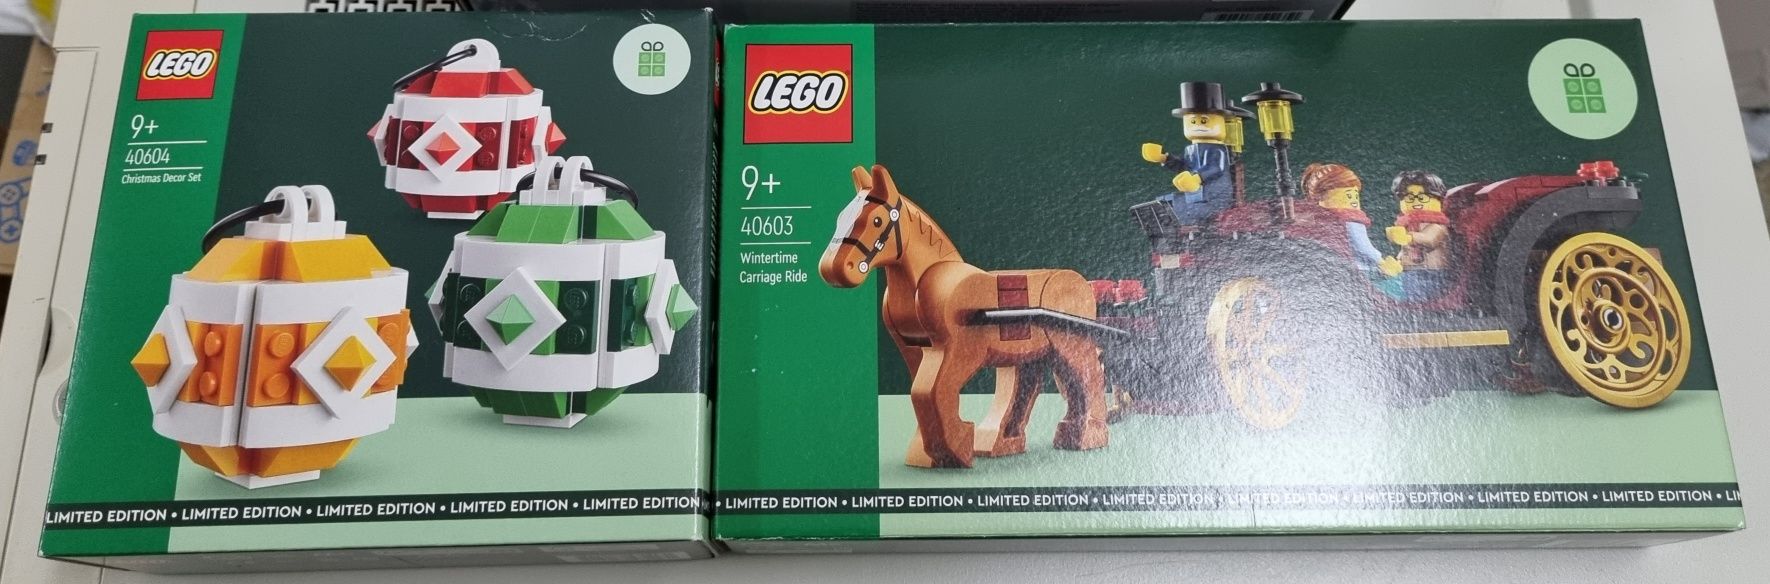 Lego Sigilat 40603